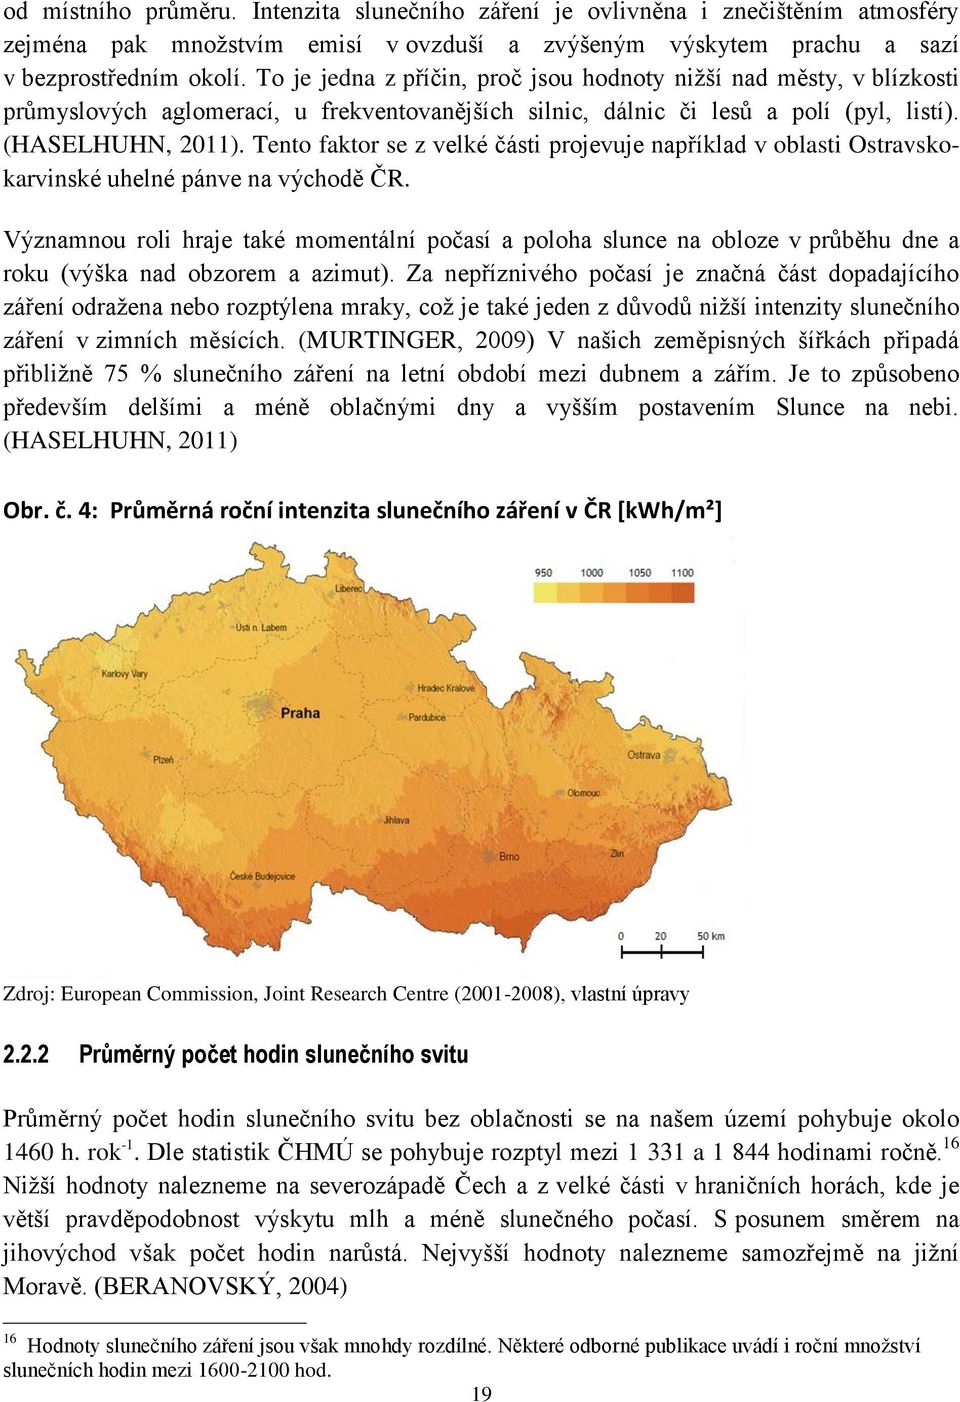 Tento faktor se z velké části projevuje například v oblasti Ostravskokarvinské uhelné pánve na východě ČR.